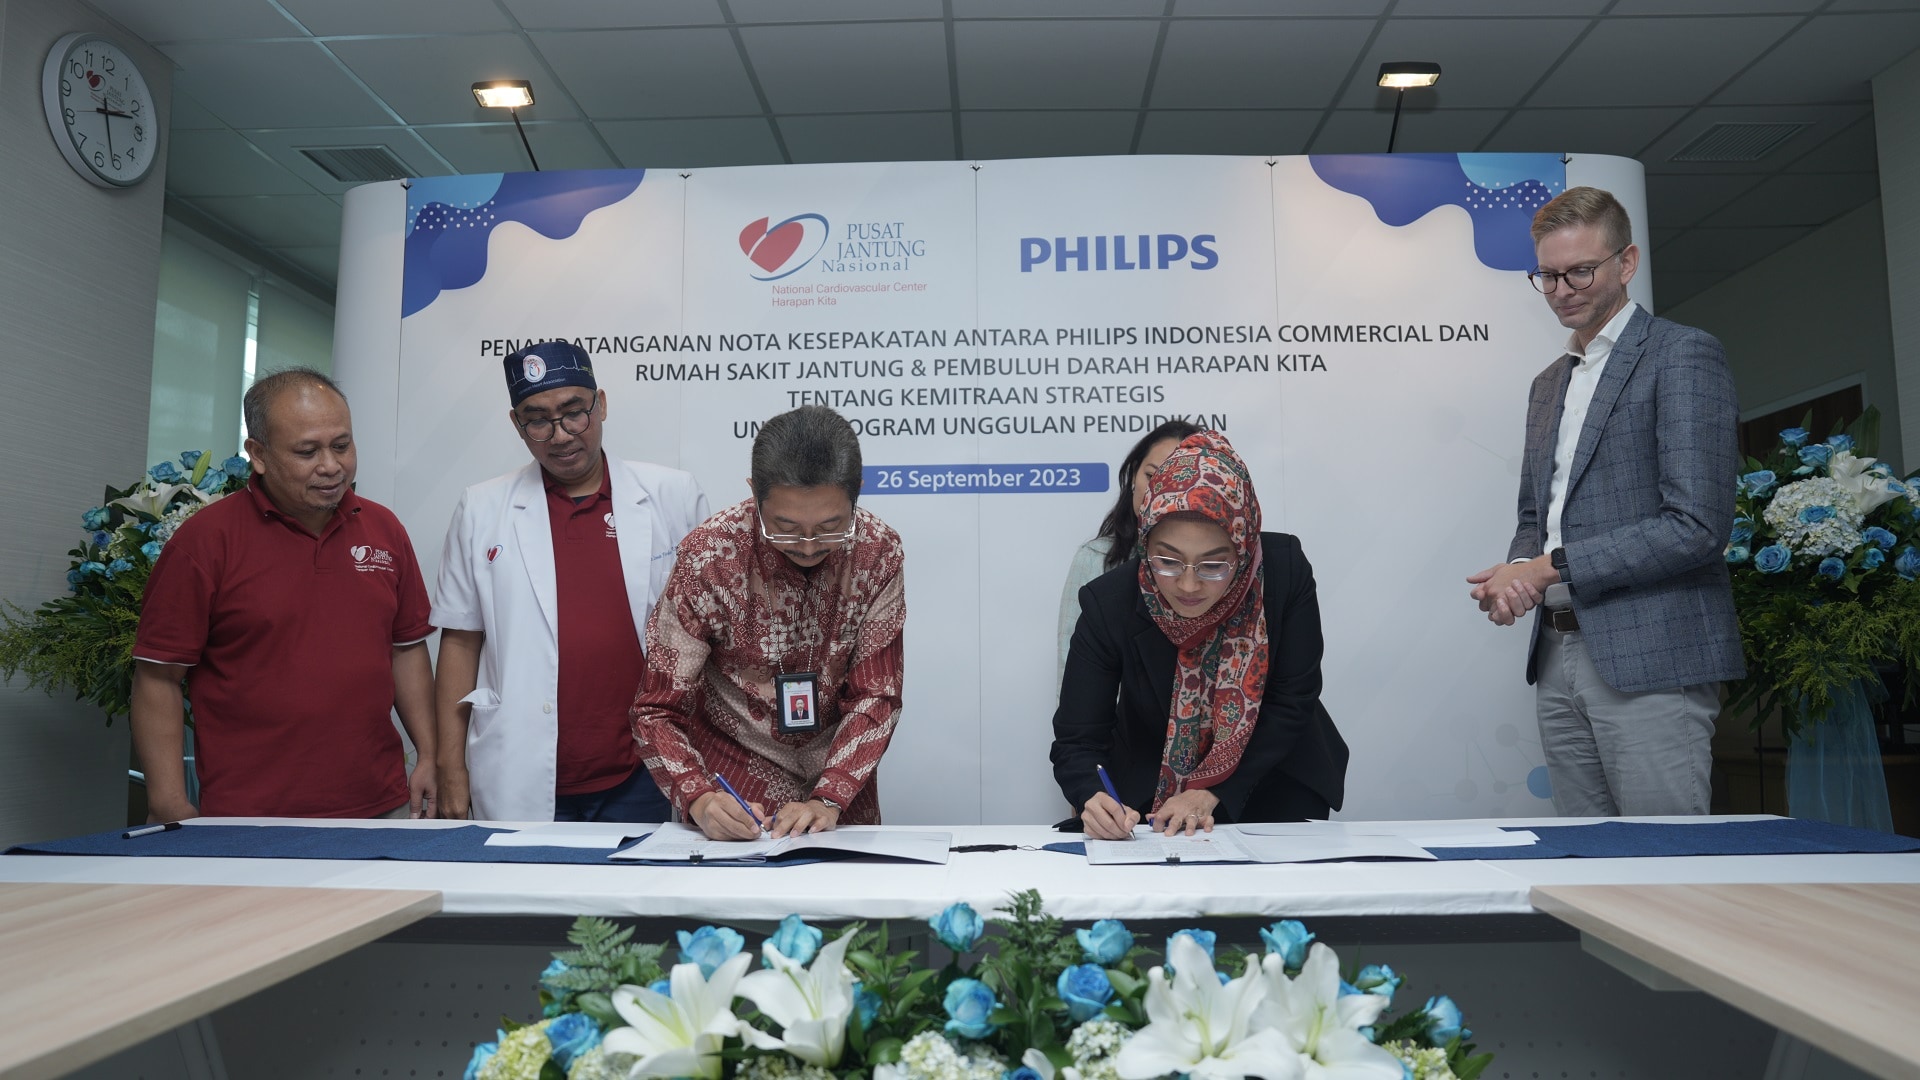 Philips Menandatangani Nota Kerja Sama dengan Rumah Sakit Jantung dan Pembuluh Darah Harapan Kita Tentang Kemitraan Strategis untuk Program Keunggulan Pendidikan Kardiovaskular Guna Mendukung Pelayanan Kesehatan Bermutu